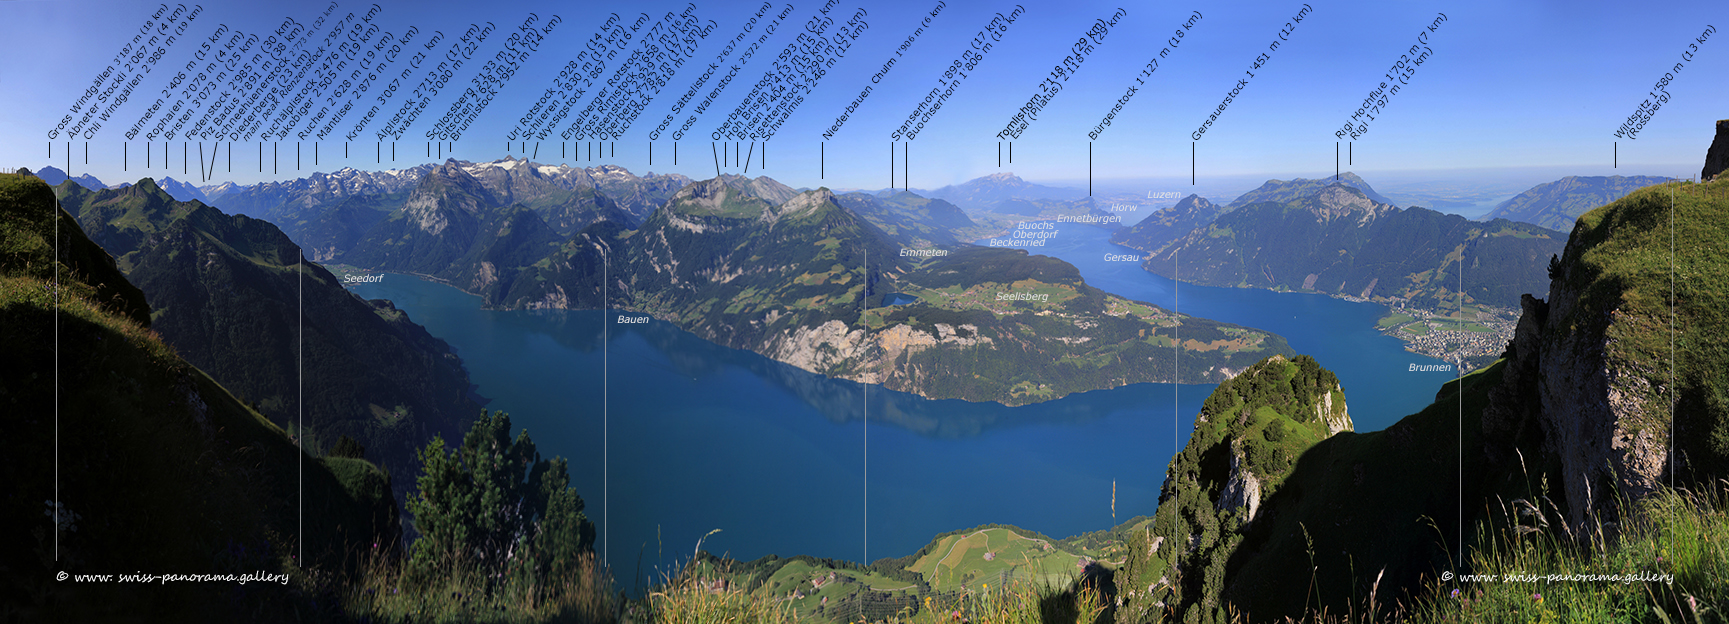 Switzerland panorama Stoos Fronalpstock Panorama